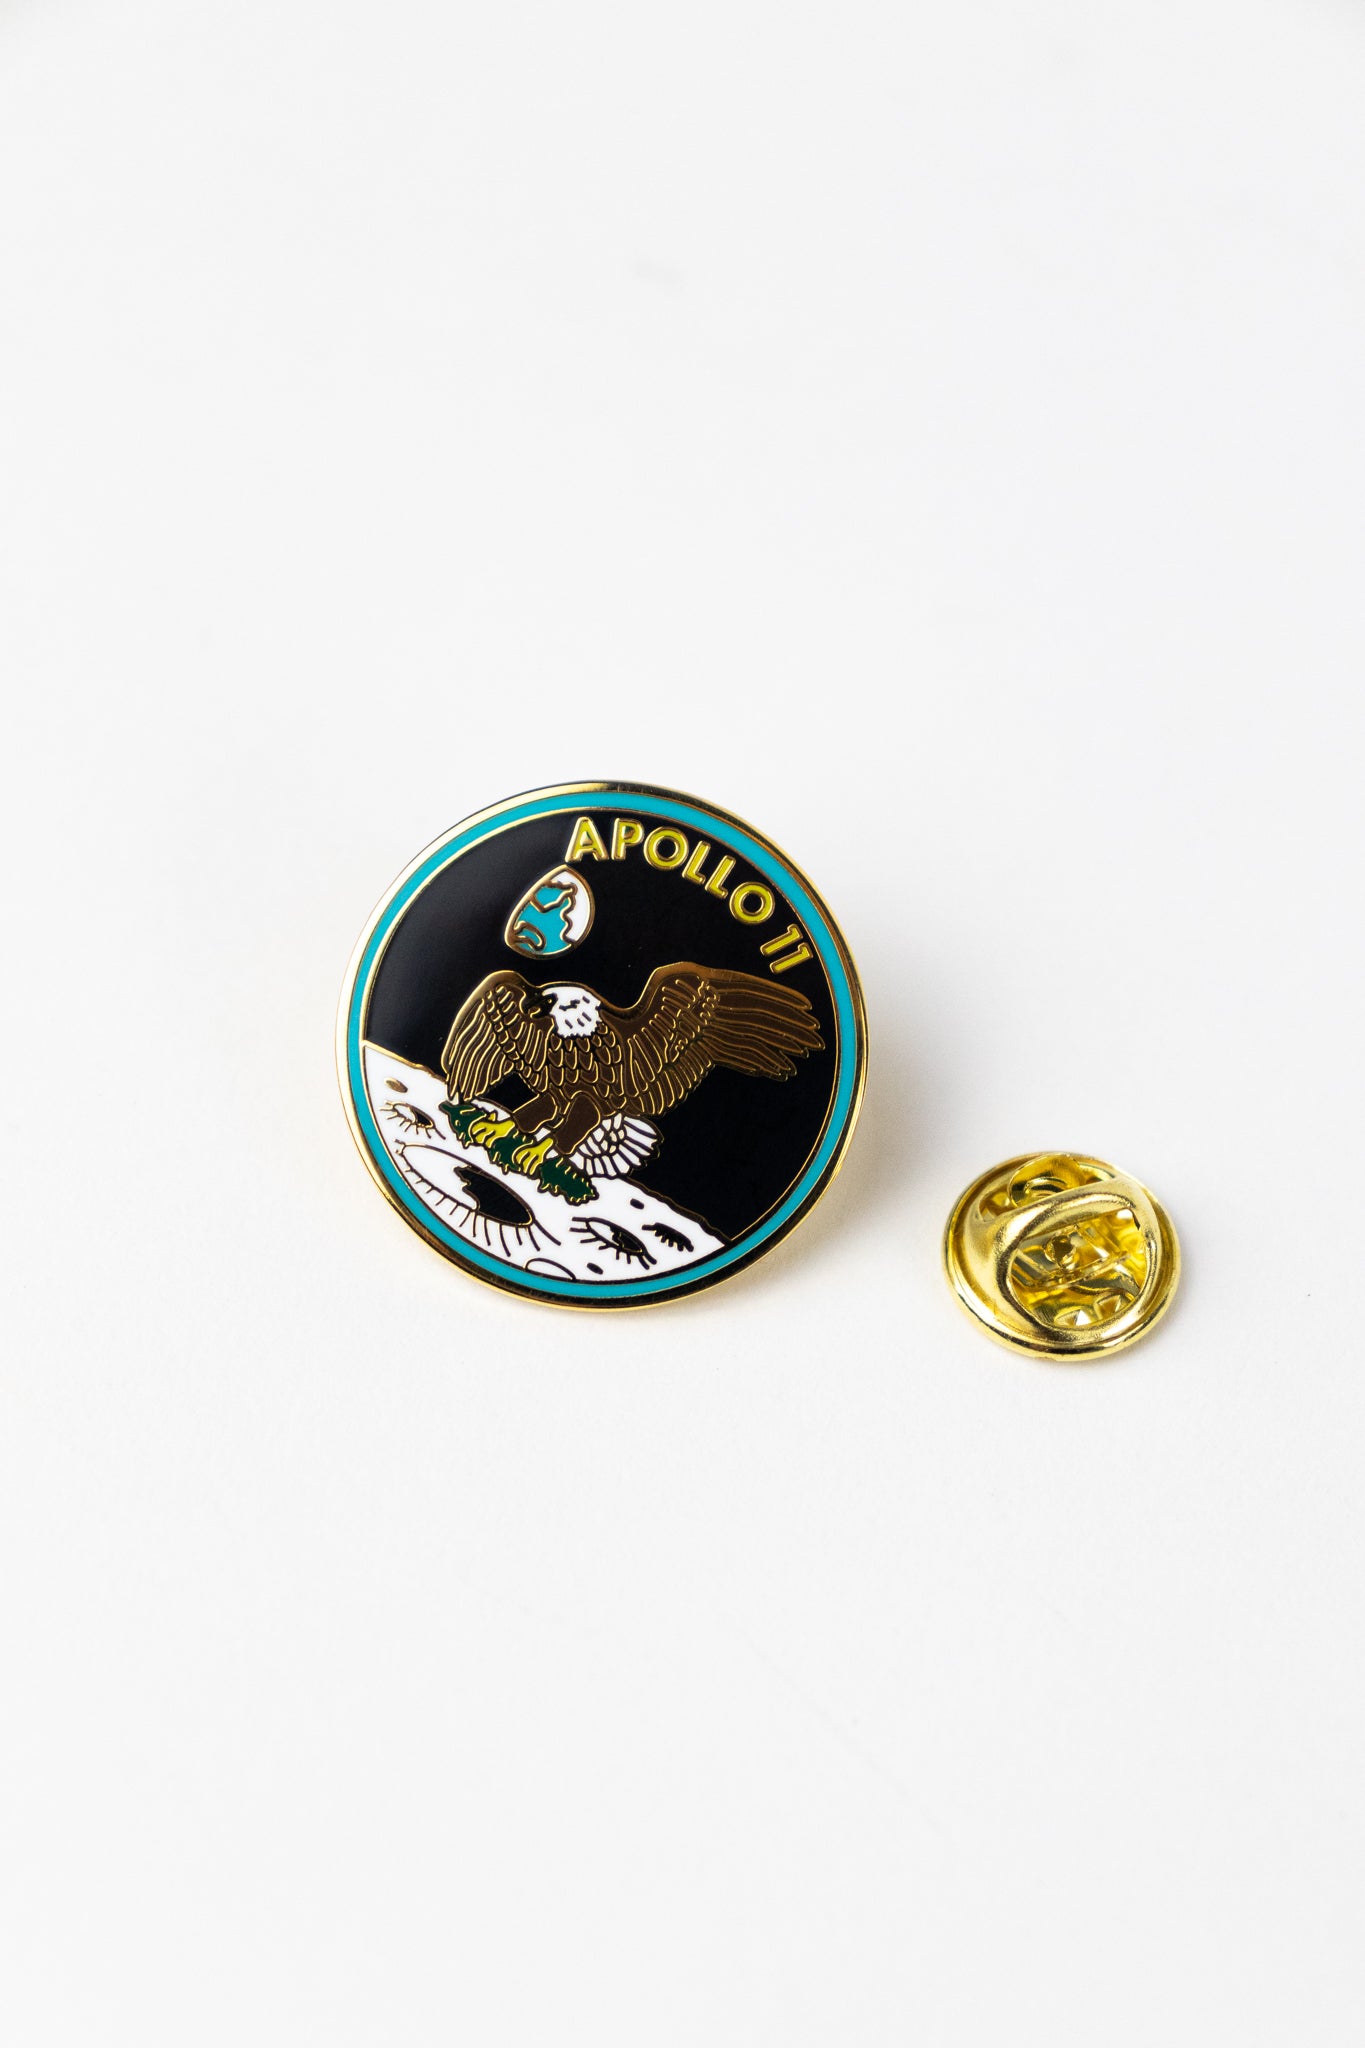 Apollo 11 Mission Insignia Pin